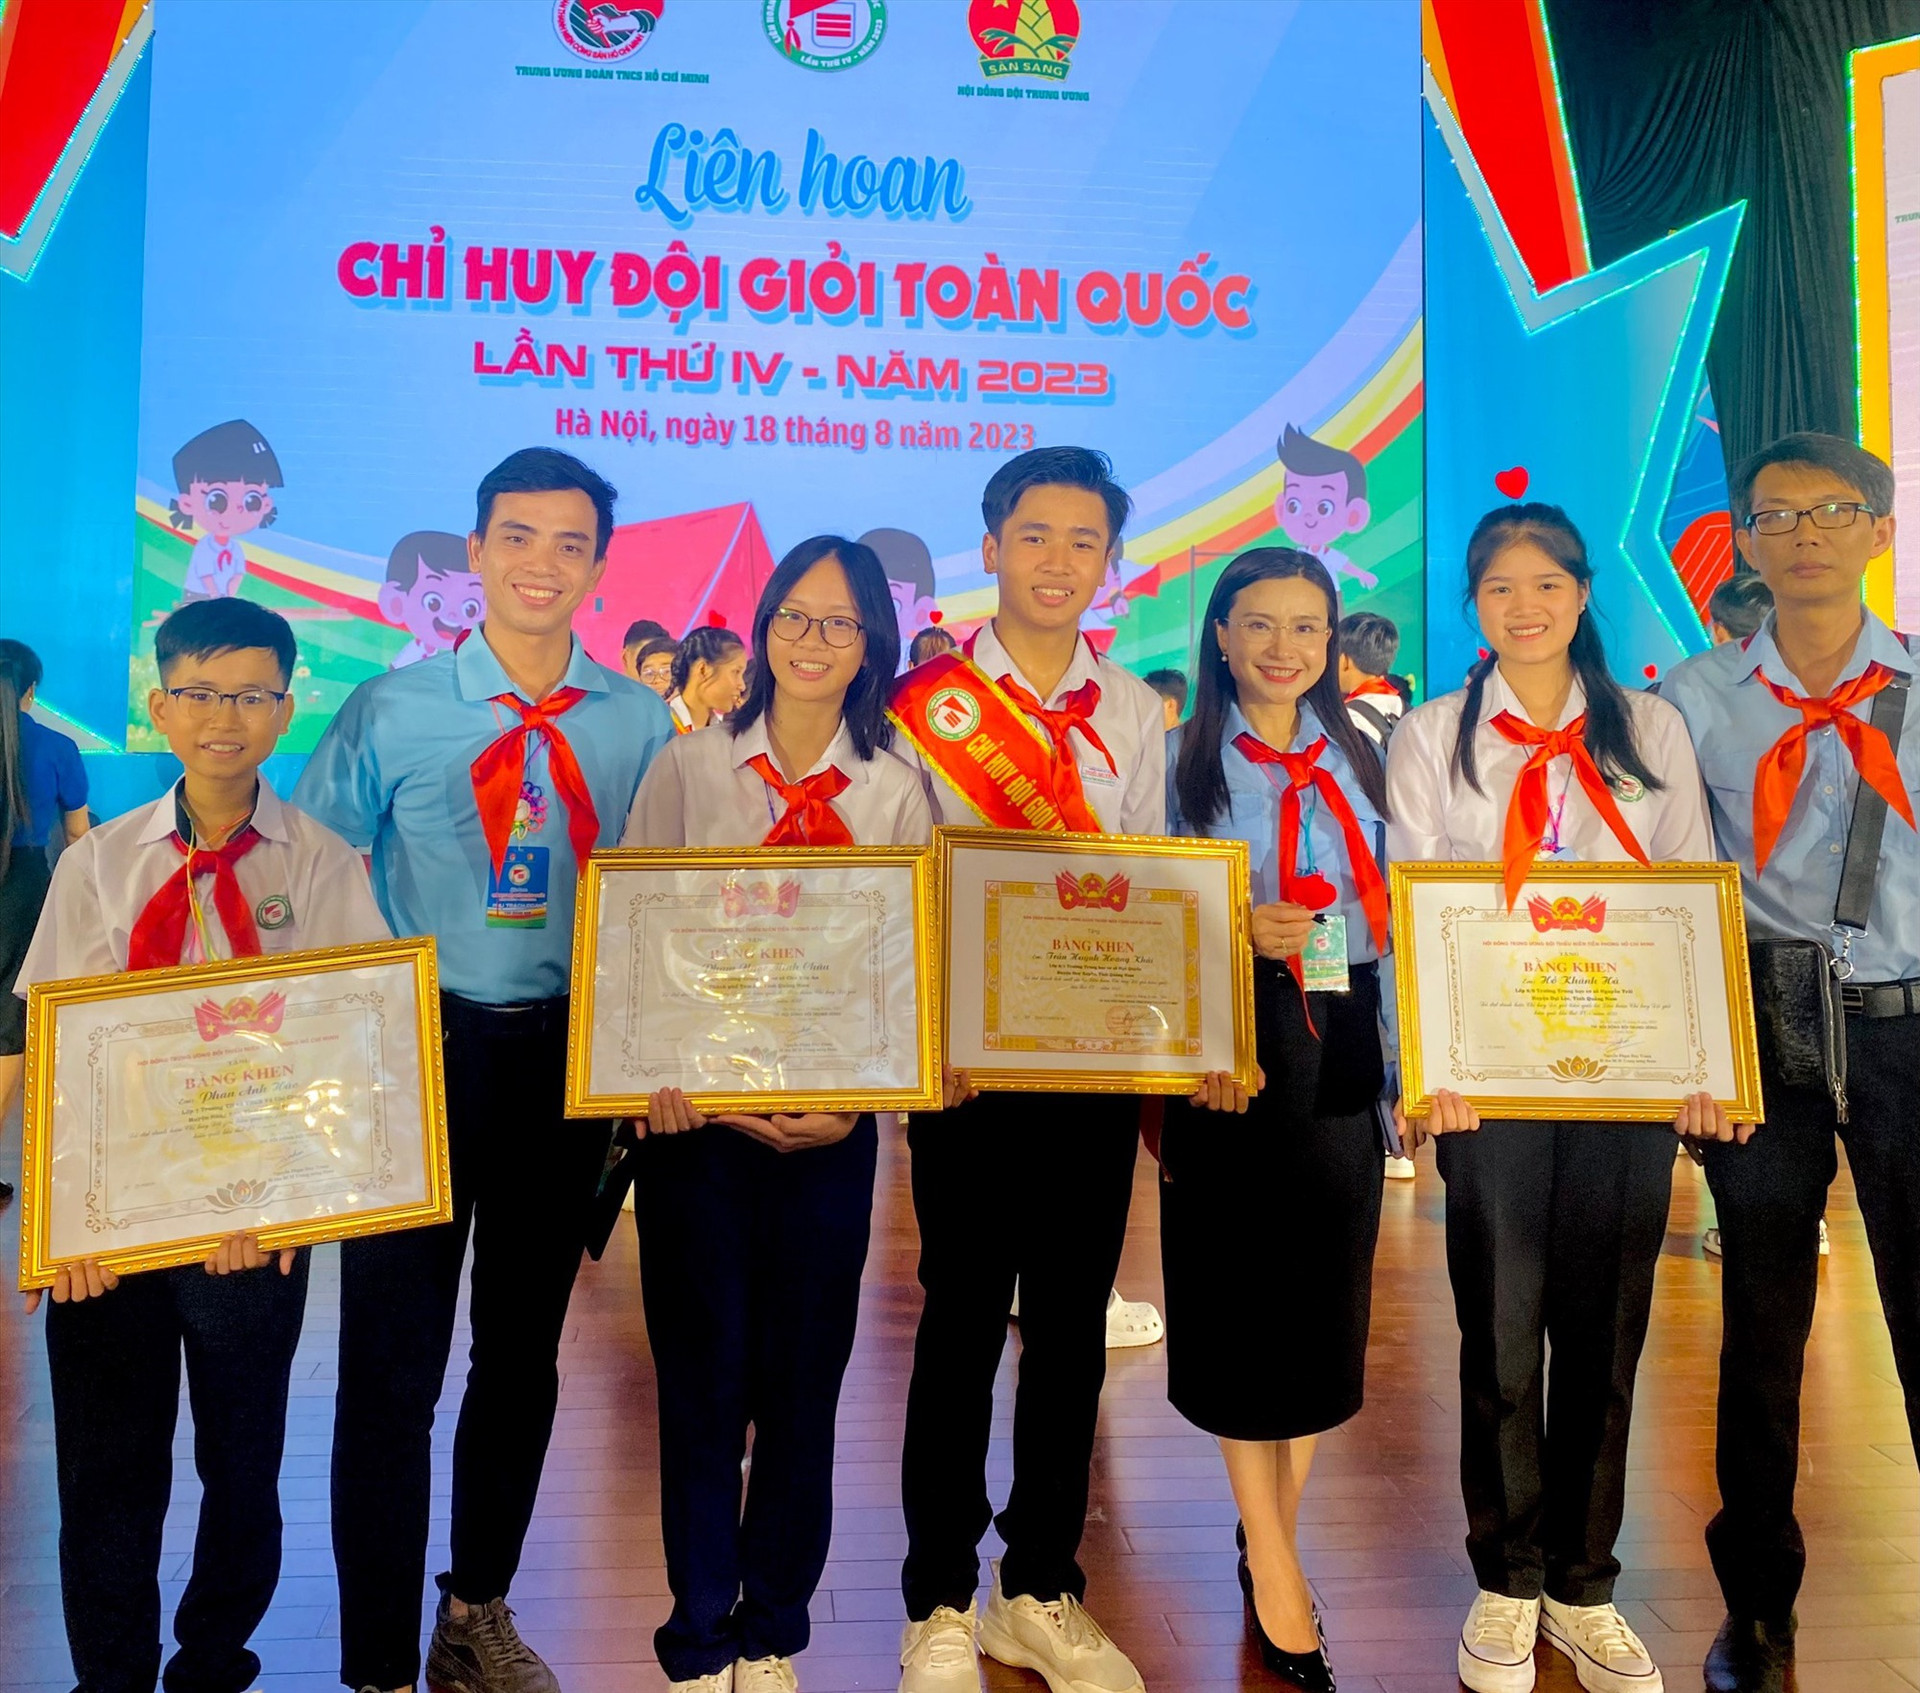 4 học sinh Quảng Nam đạt danh hiệu Chỉ huy Đội giỏi toàn quốc năm 2023 và thầy giáo dẫn đoàn Đoàn Minh Hoàng - TPT Đội trường THCS Ngô Quyền (Duy Xuyên). Ảnh: M.H